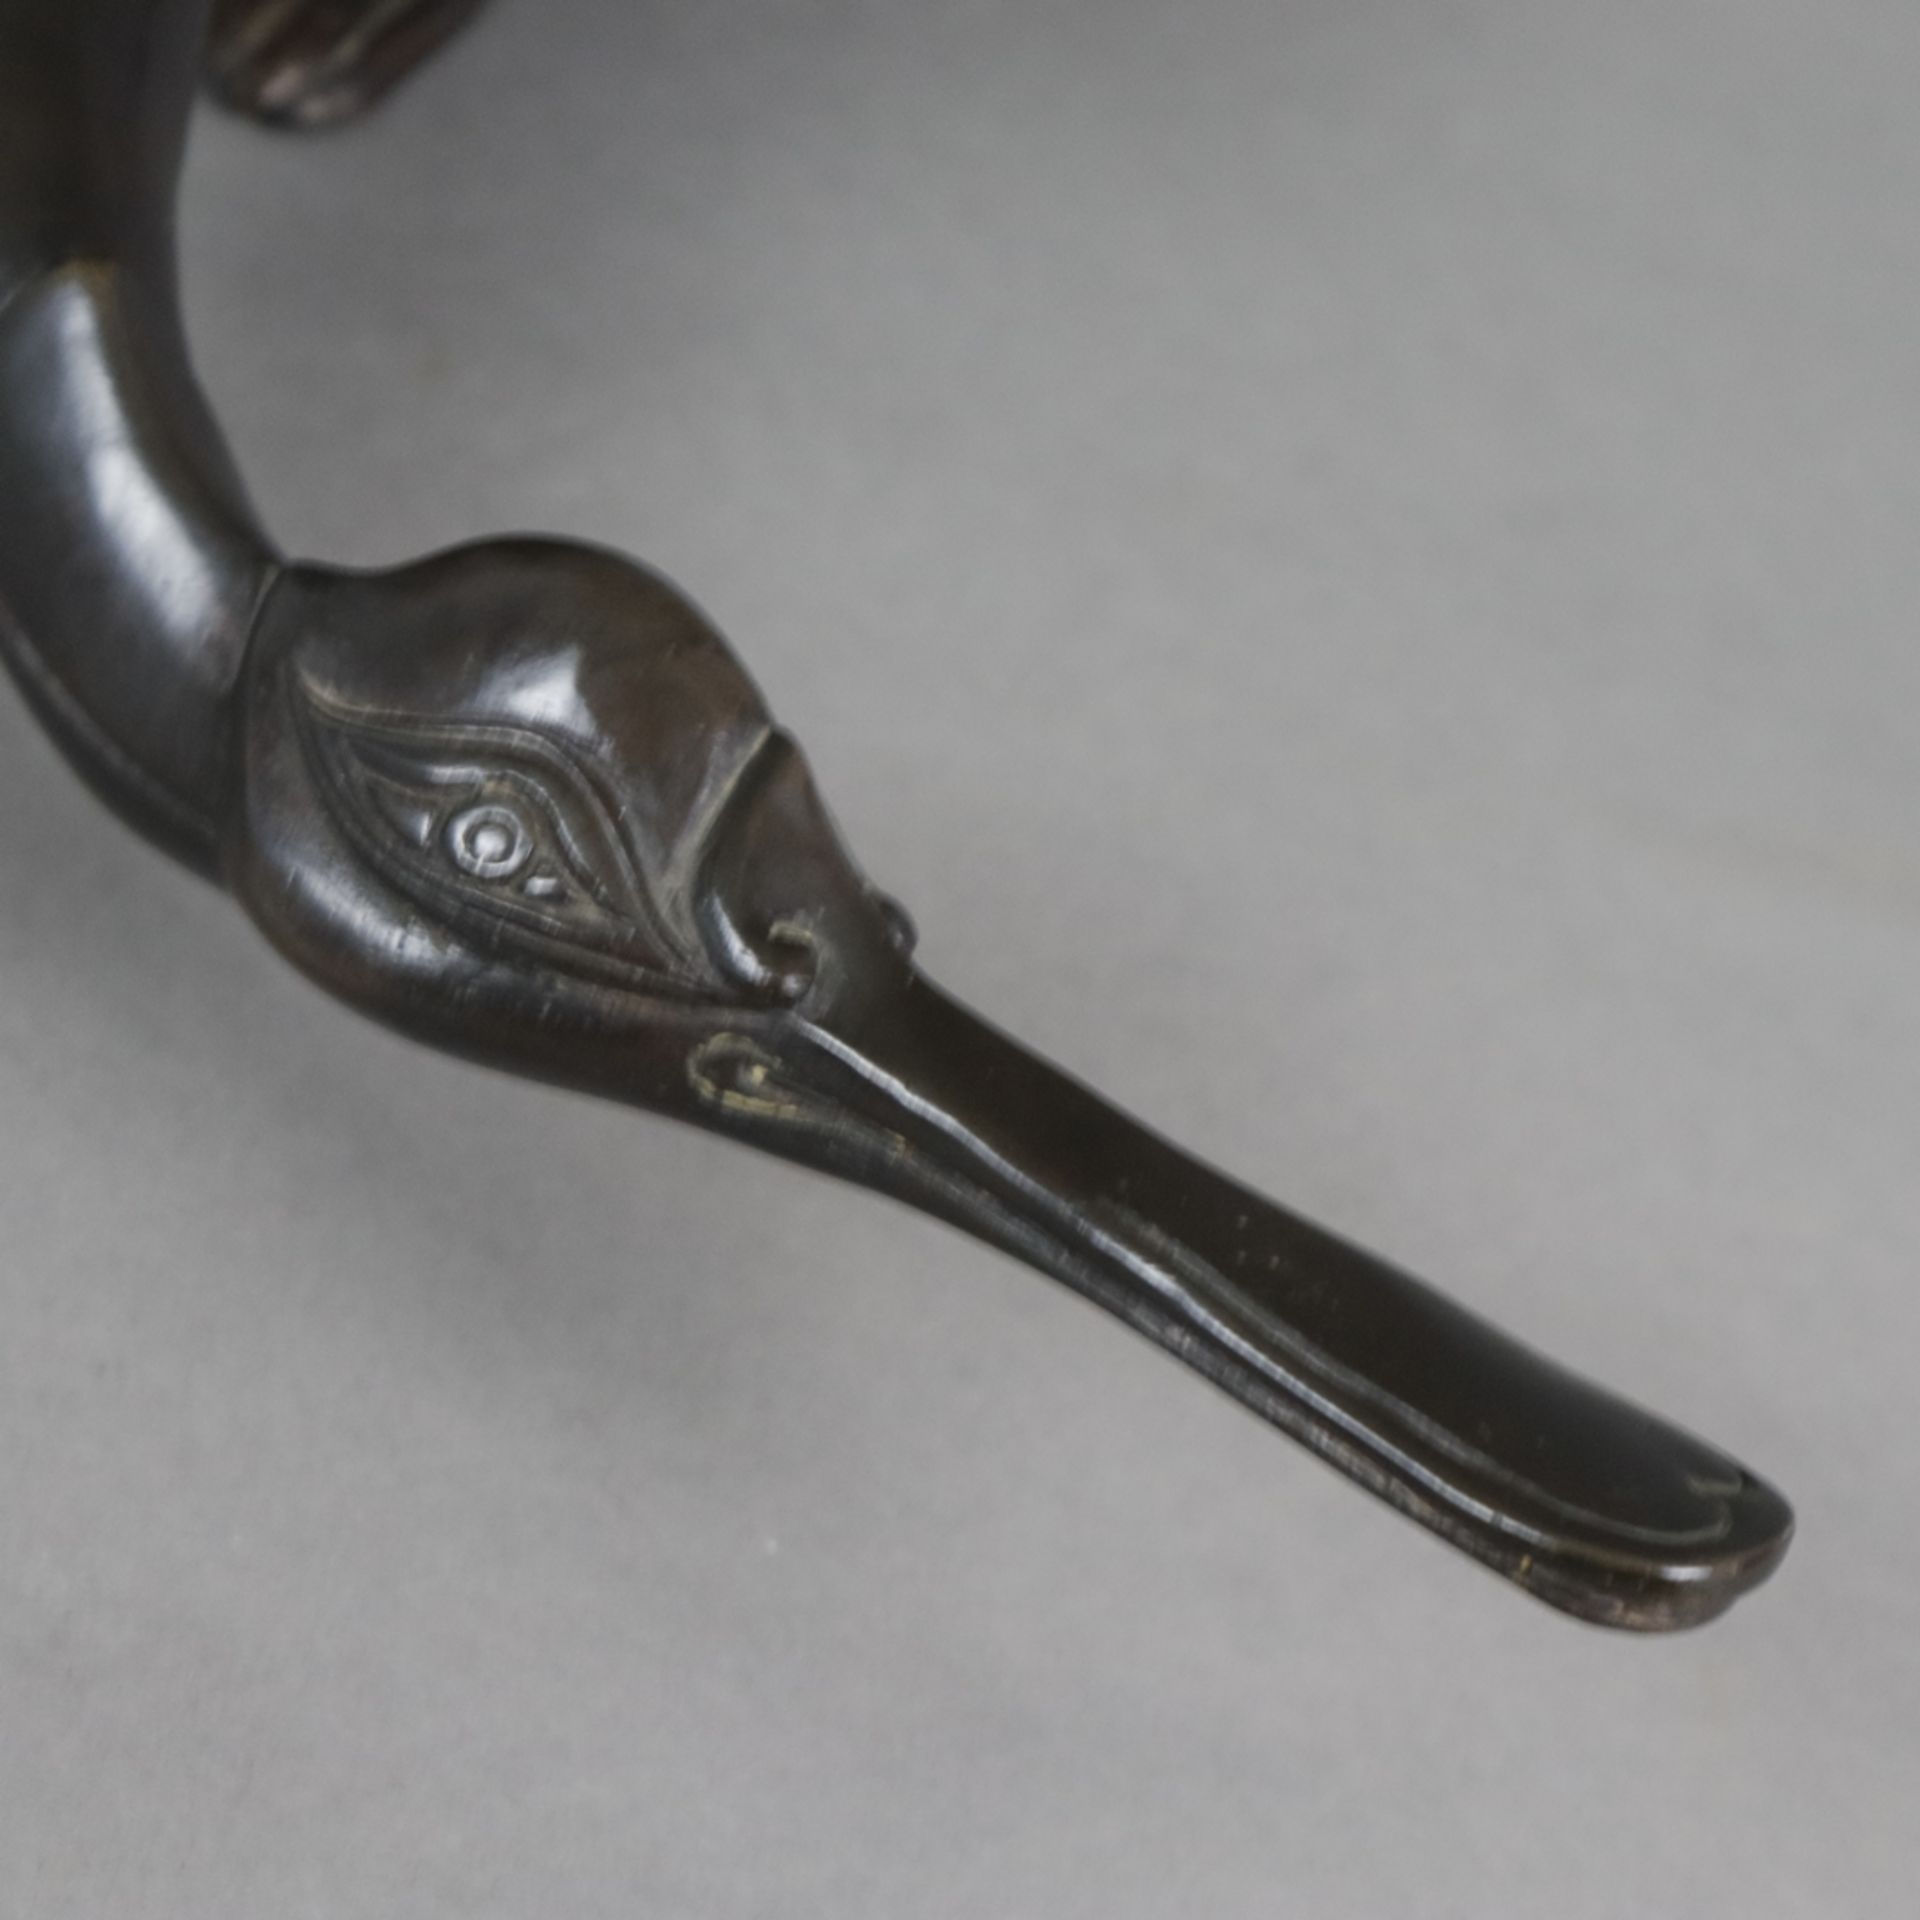 Tierfigur "Ente" - Messingguss, bronziert, unterseitig gestempelt "Santi's" mit Auflagenr. 11/5000, - Image 3 of 10